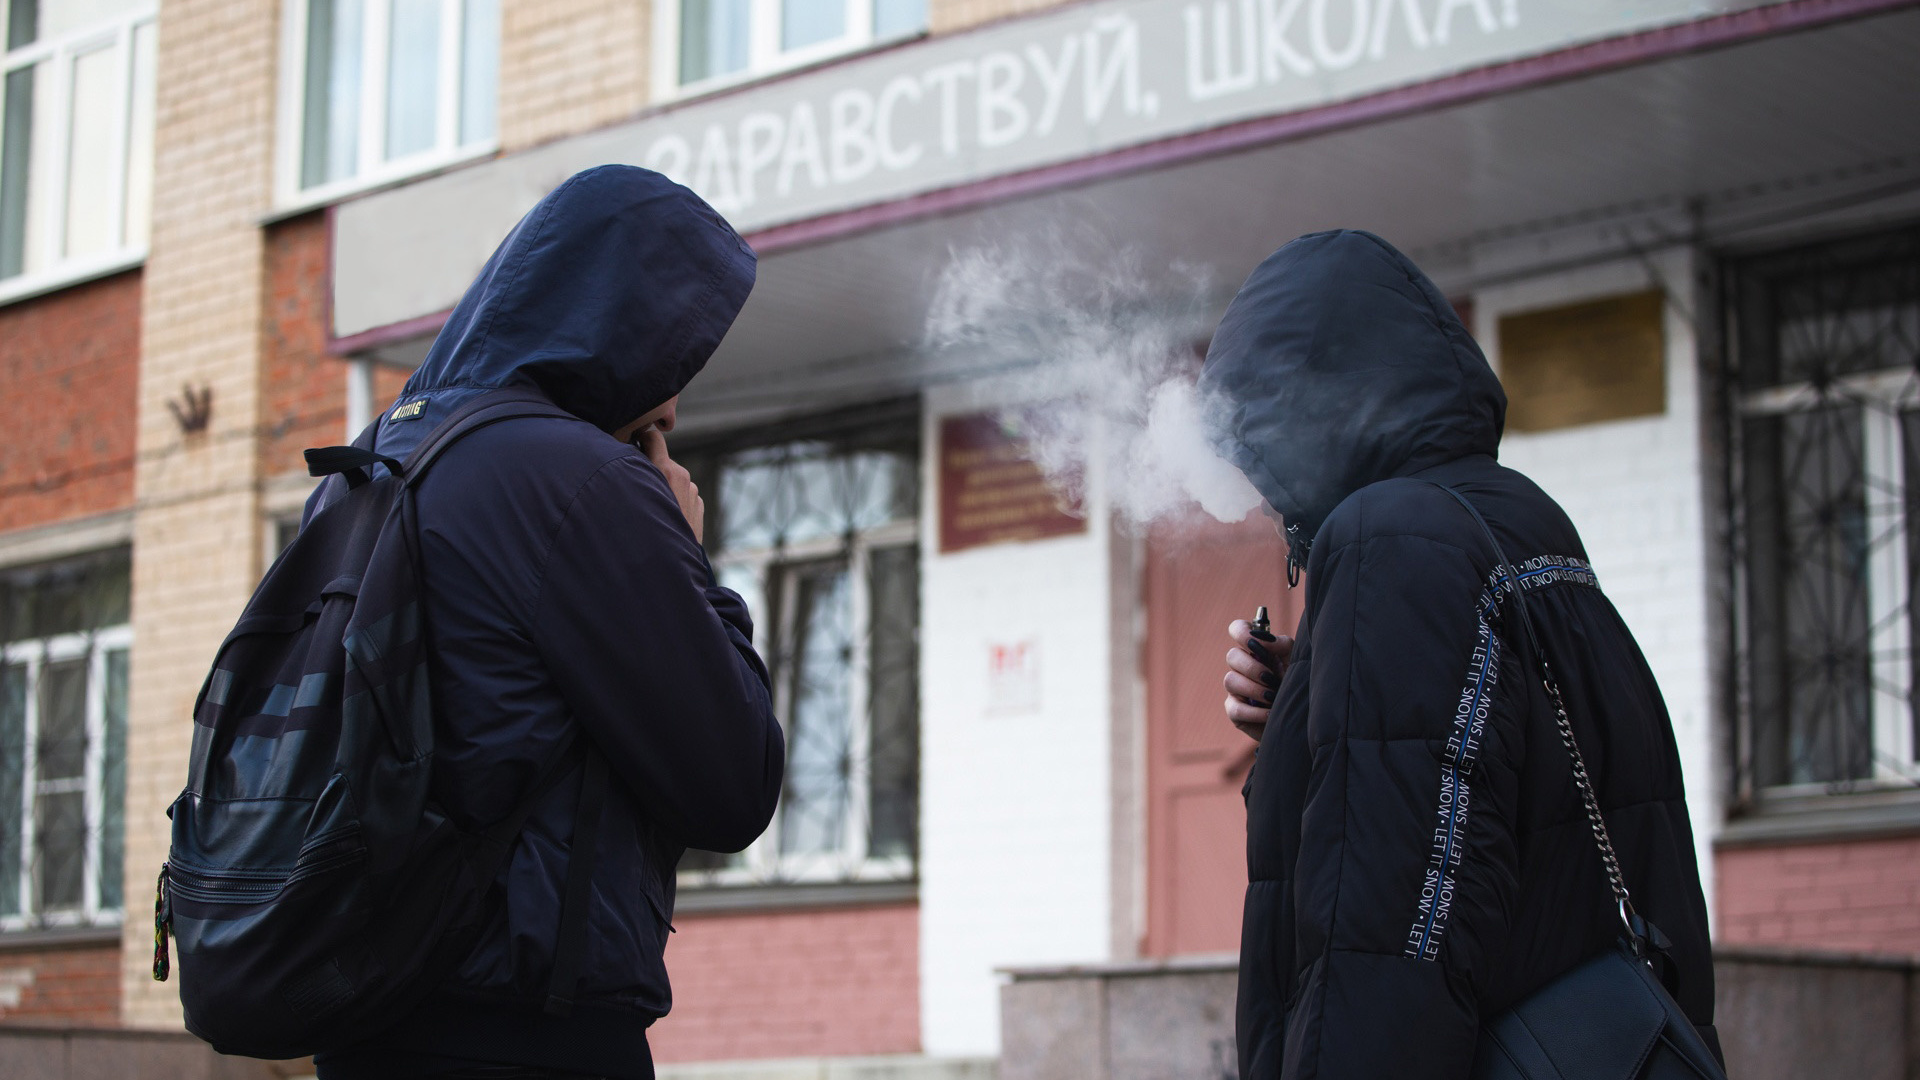 «Парят в туалетах и на уроках»: в школах Челябинска дети курят вейпы. Что делают директора